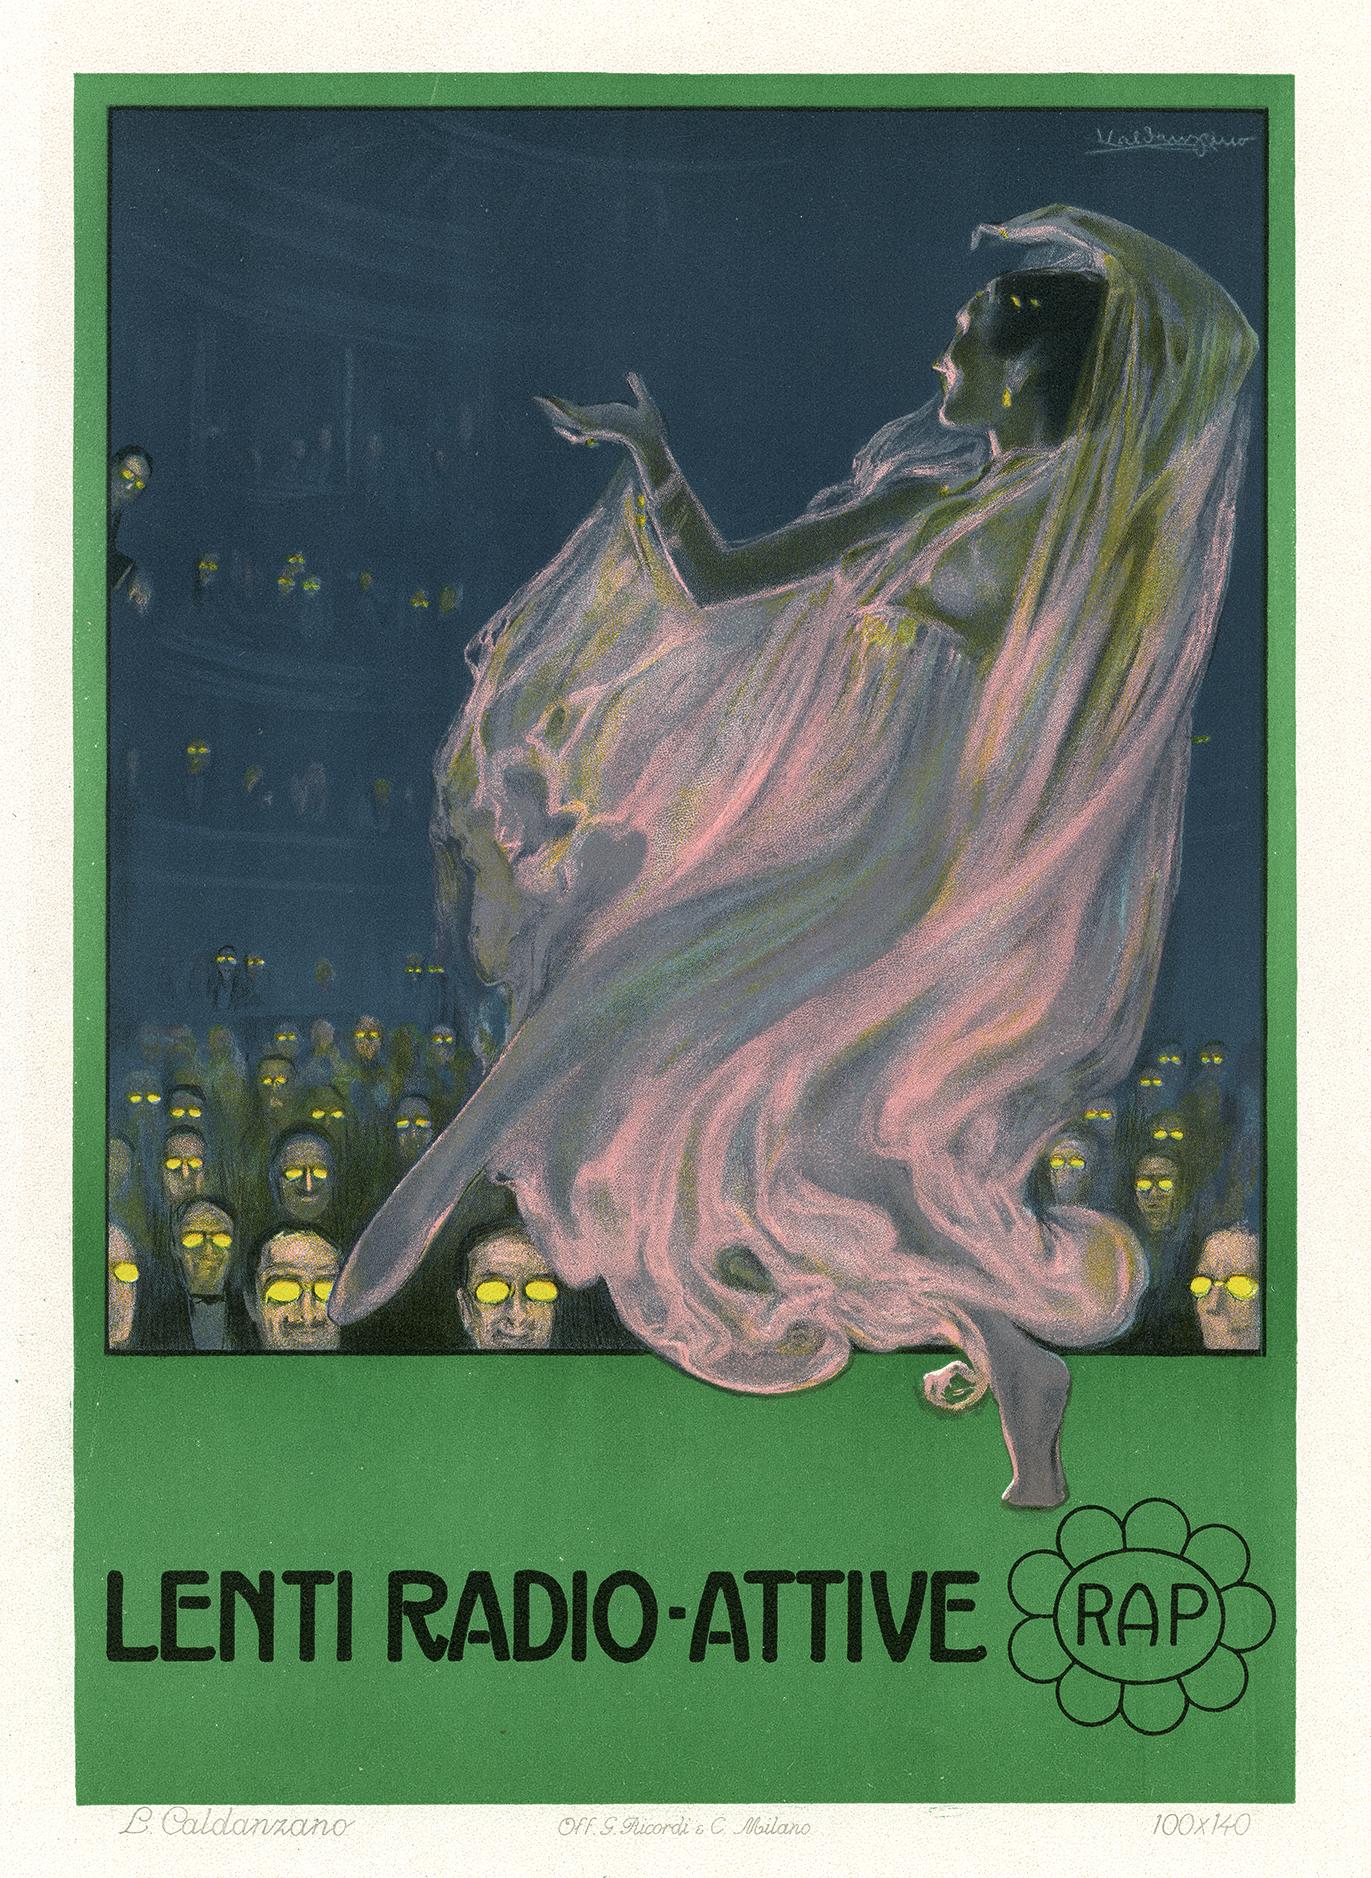 Lenti Radio-Attive, Art Nouveau Ricordi Portfolio advertisement lithograph, 1912 - Print by Luigi Emilio Caldanzano